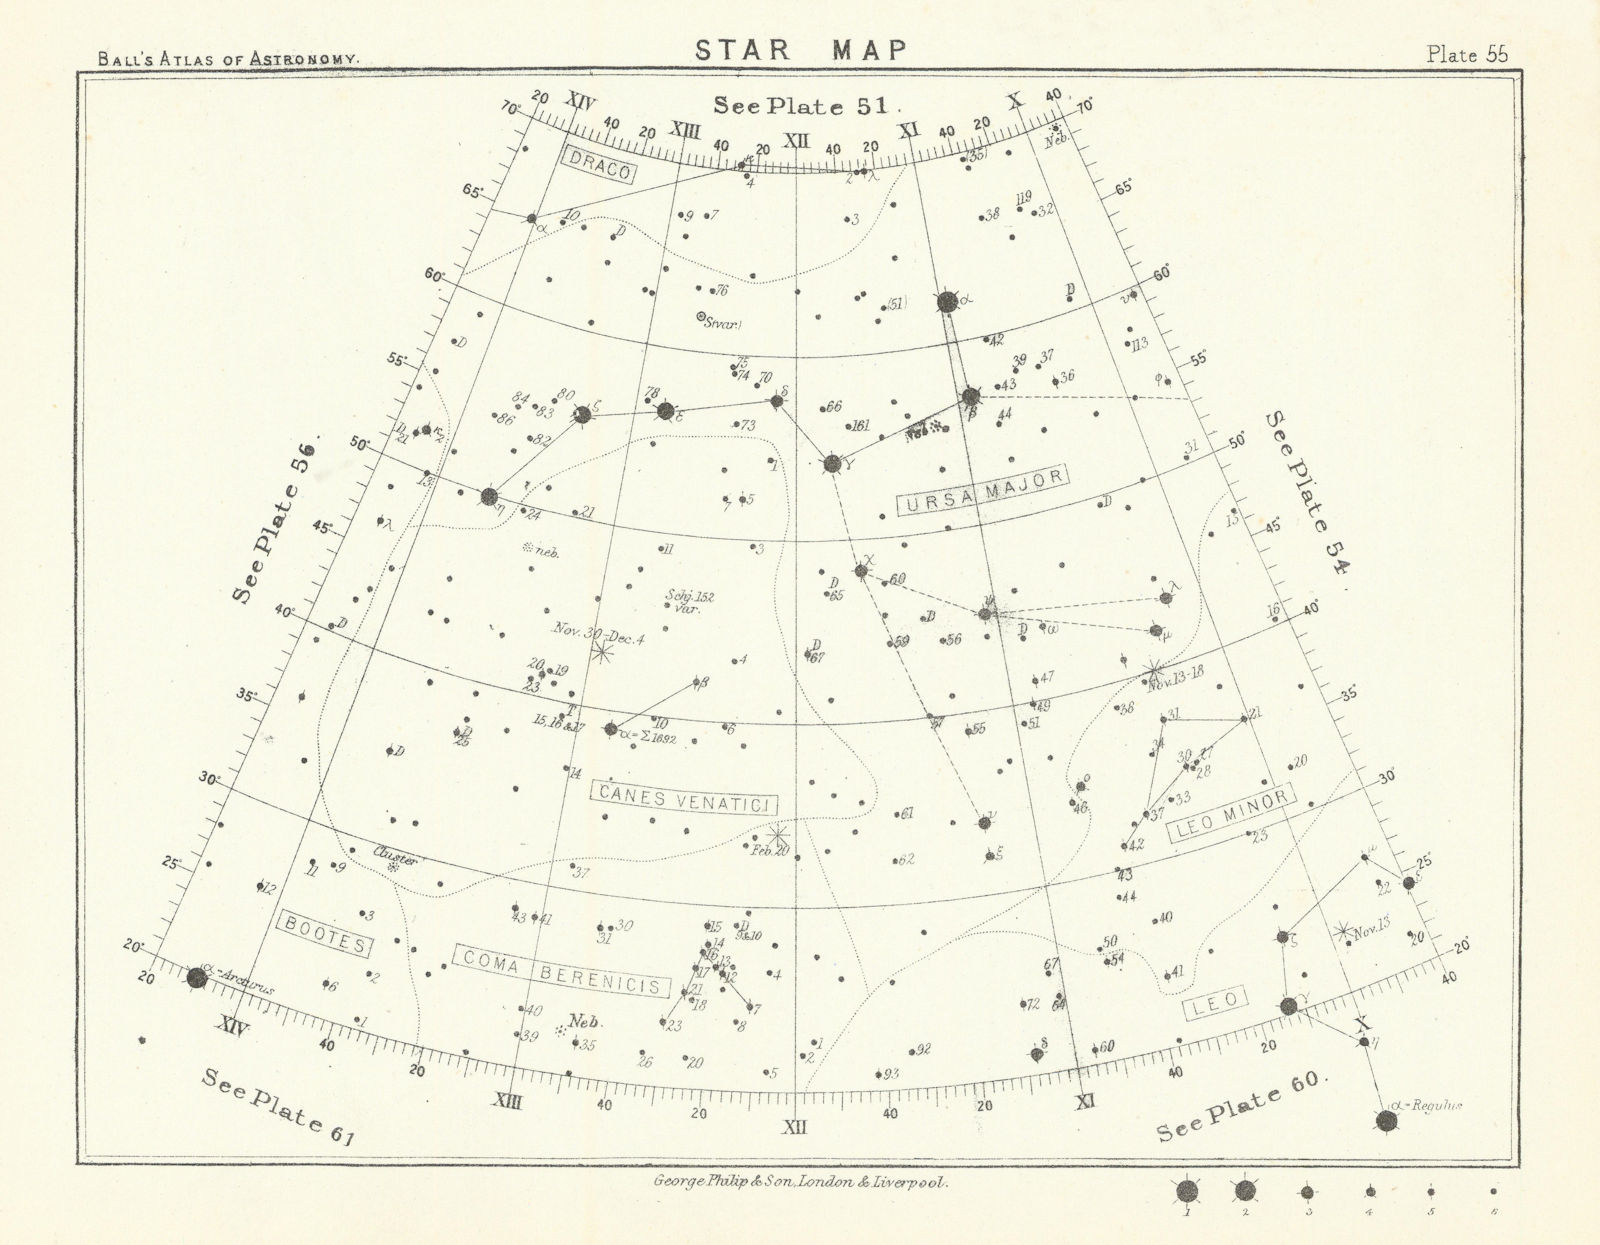 Star map night sky Bootes Cancer Canes Coma Berenicis Draco Gemini Leo Ursa 1892